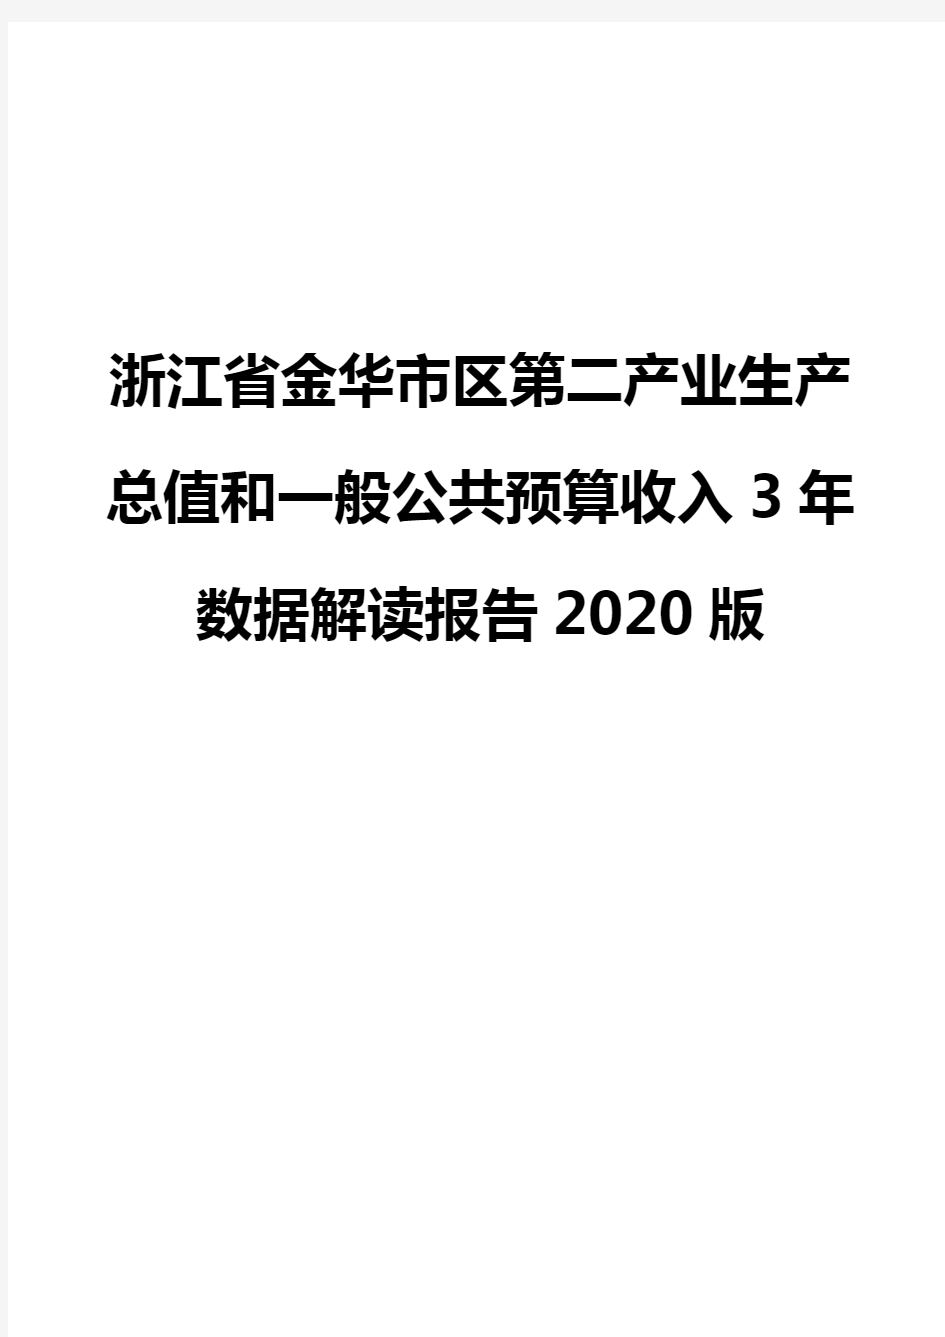 浙江省金华市区第二产业生产总值和一般公共预算收入3年数据解读报告2020版